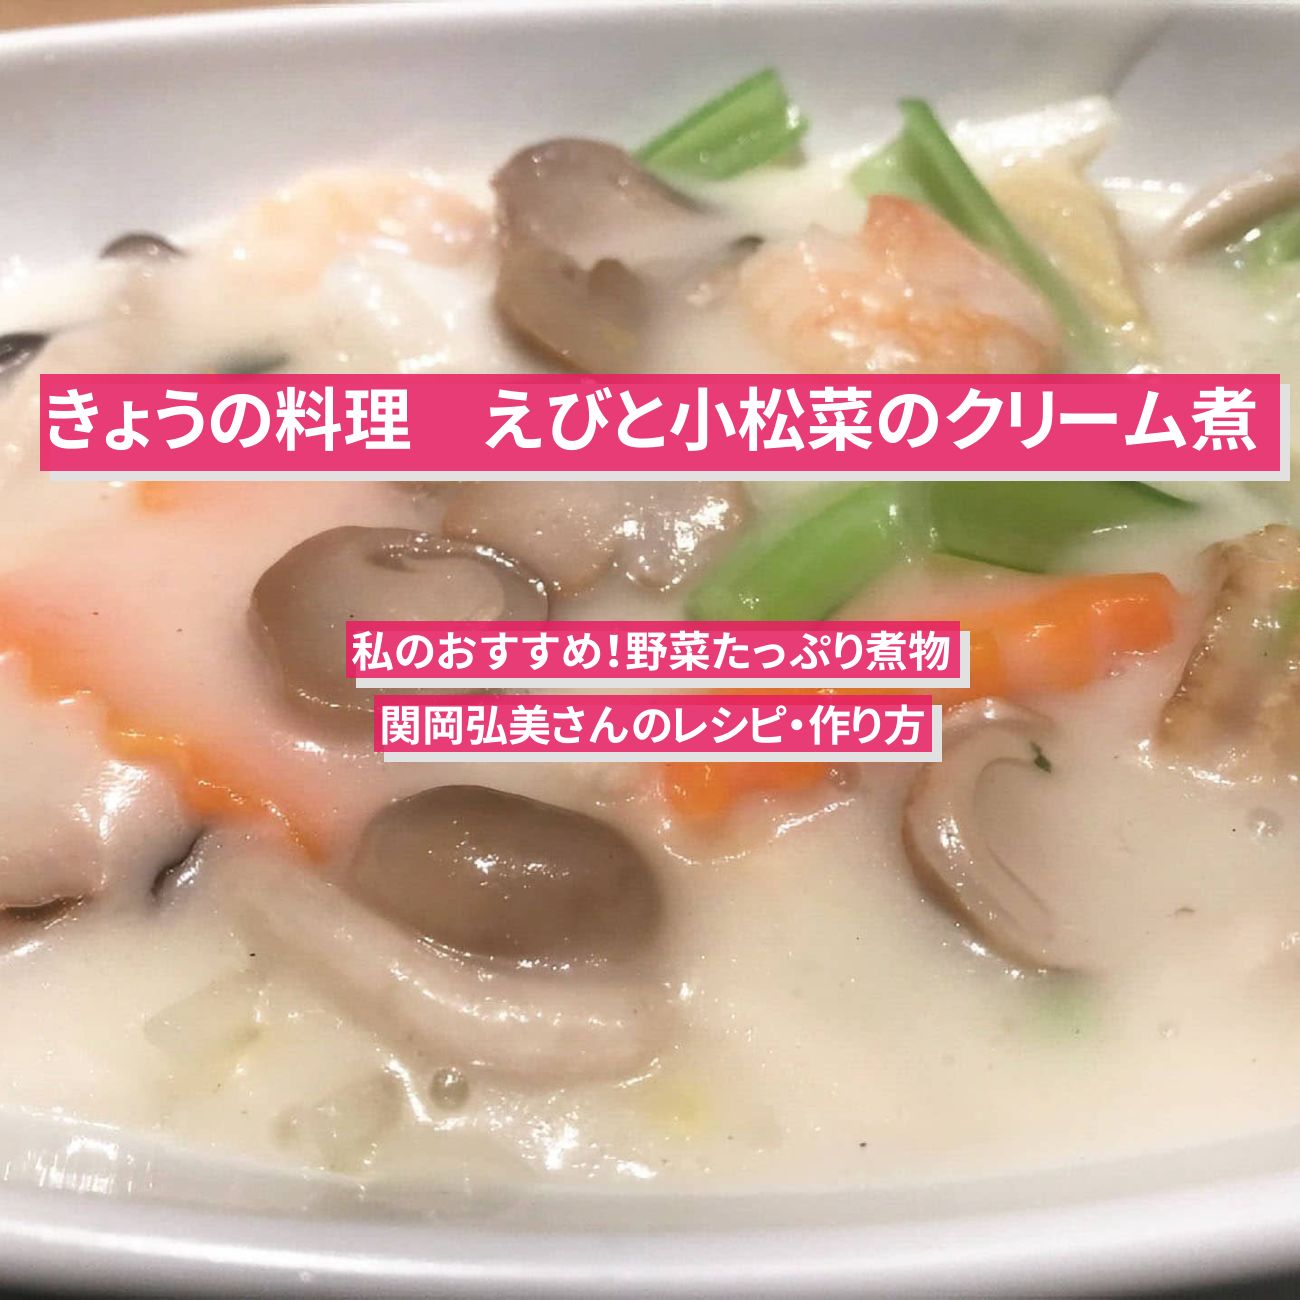 【きょうの料理】『えびと小松菜のクリーム煮』関岡弘美さんのレシピ・作り方